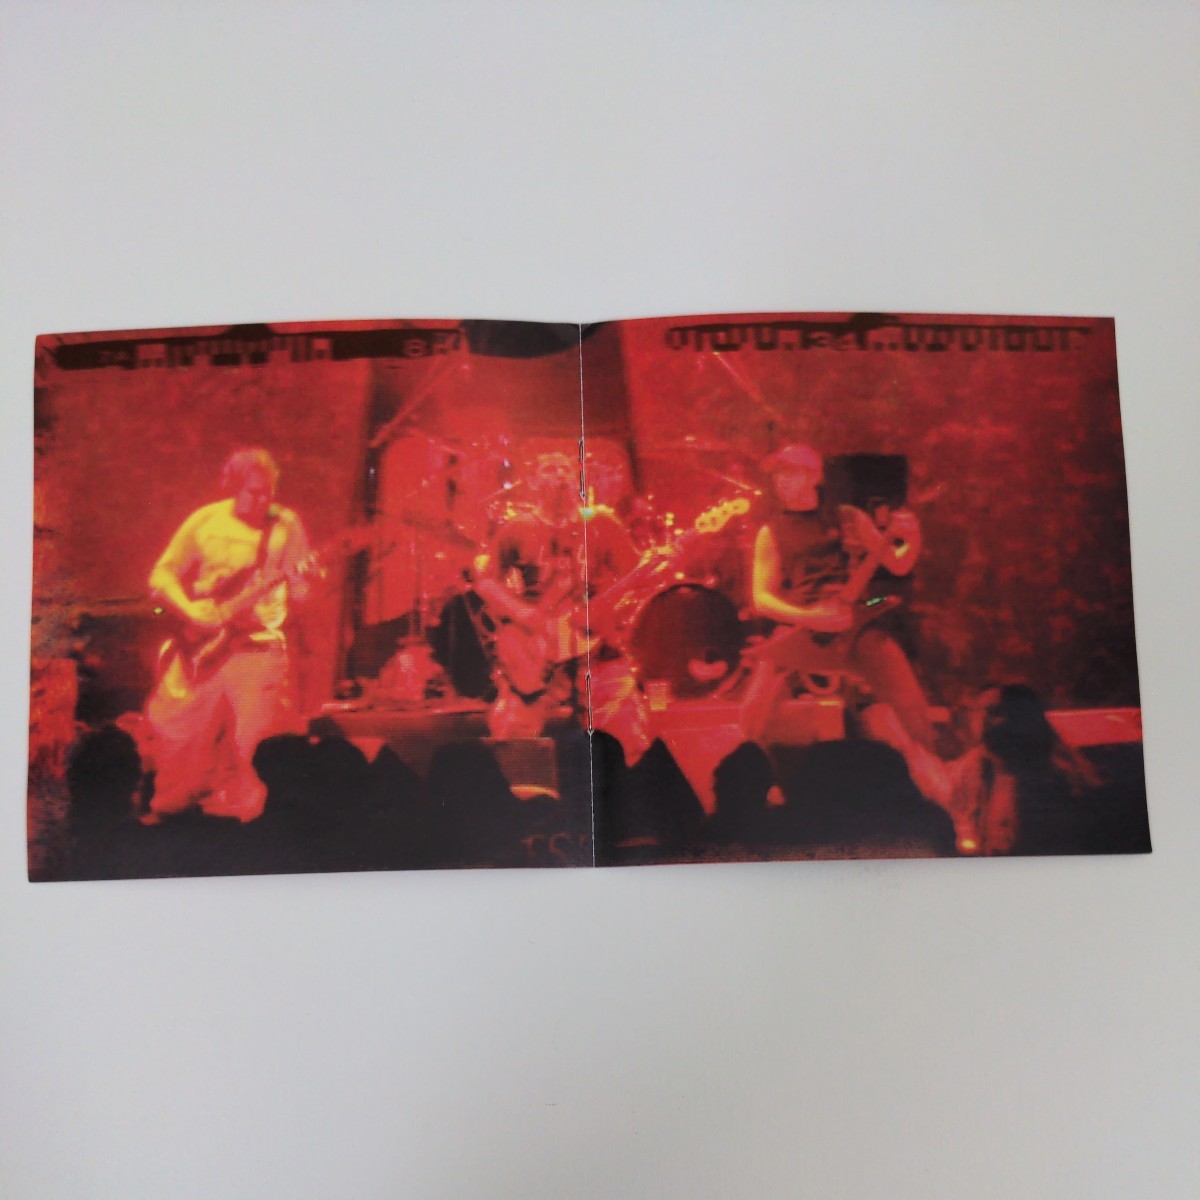 TORTURER Chile Death Thrash Heavy Metal デス・スラッシュメタル ヘヴィメタル 輸入盤CD 3rdの画像2